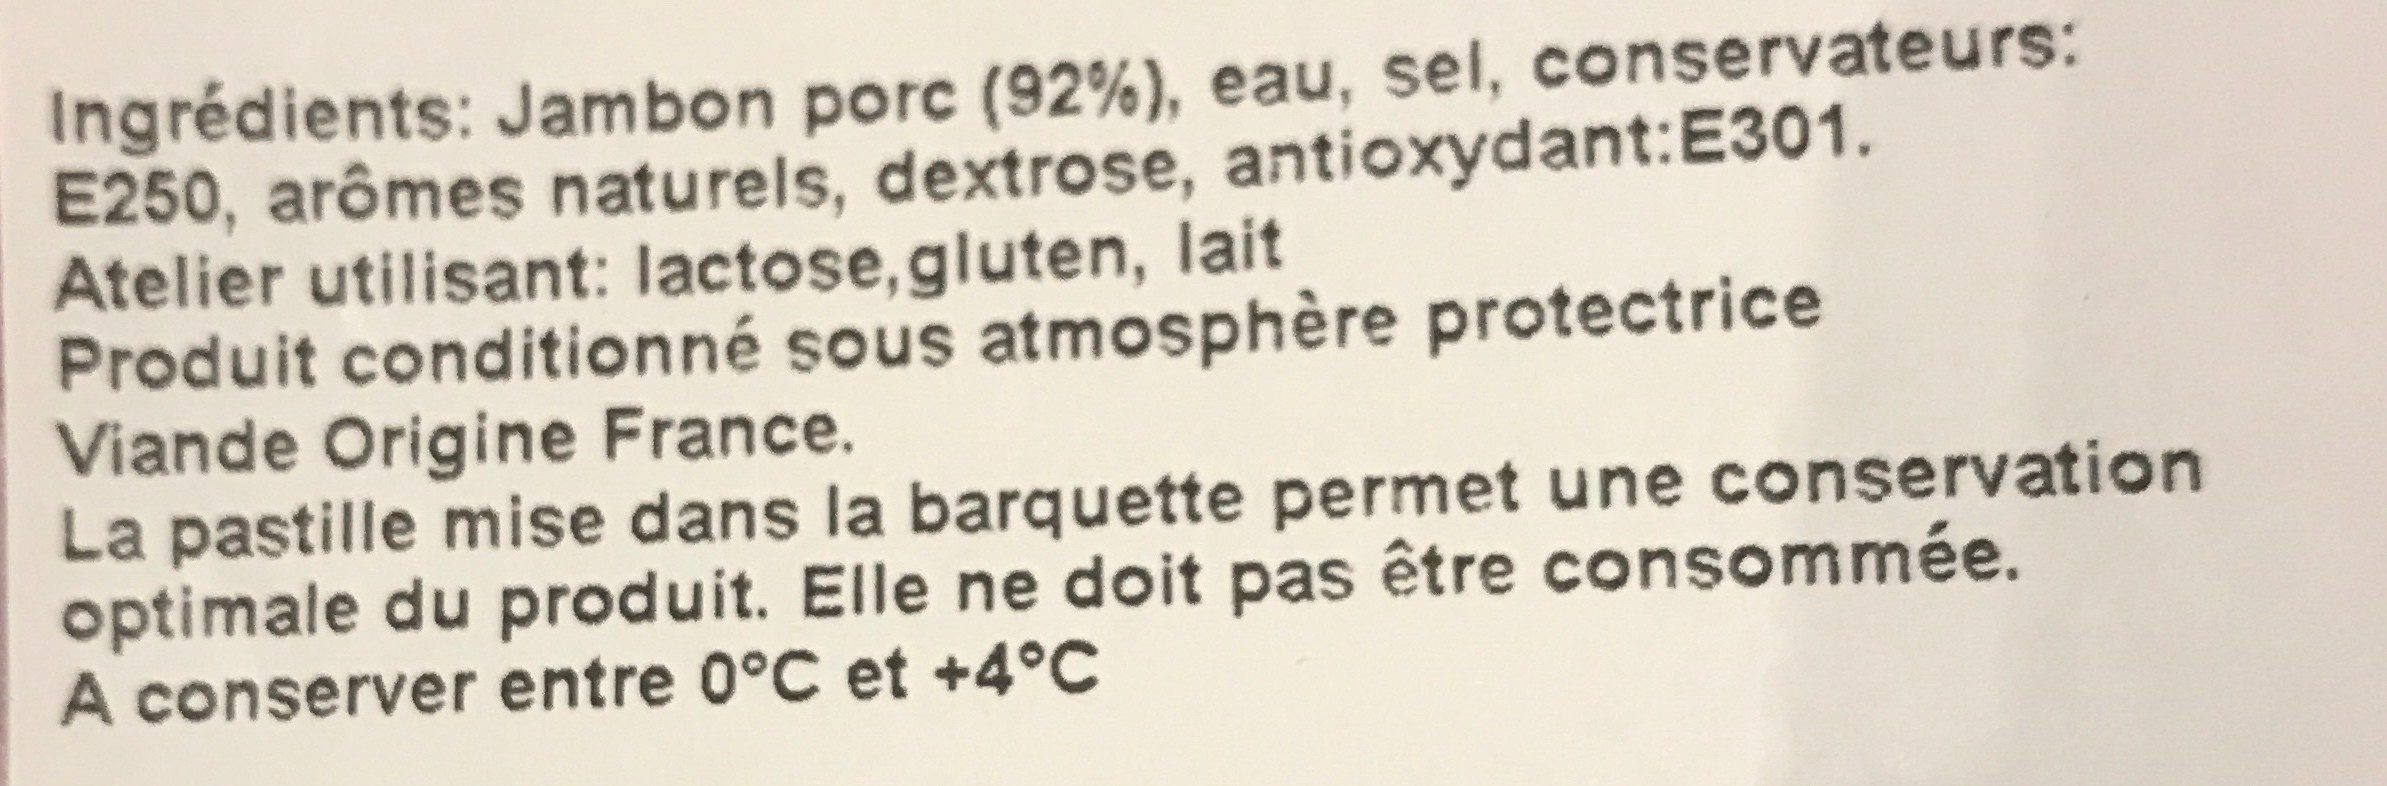 Janbon de paris - Ingredients - fr